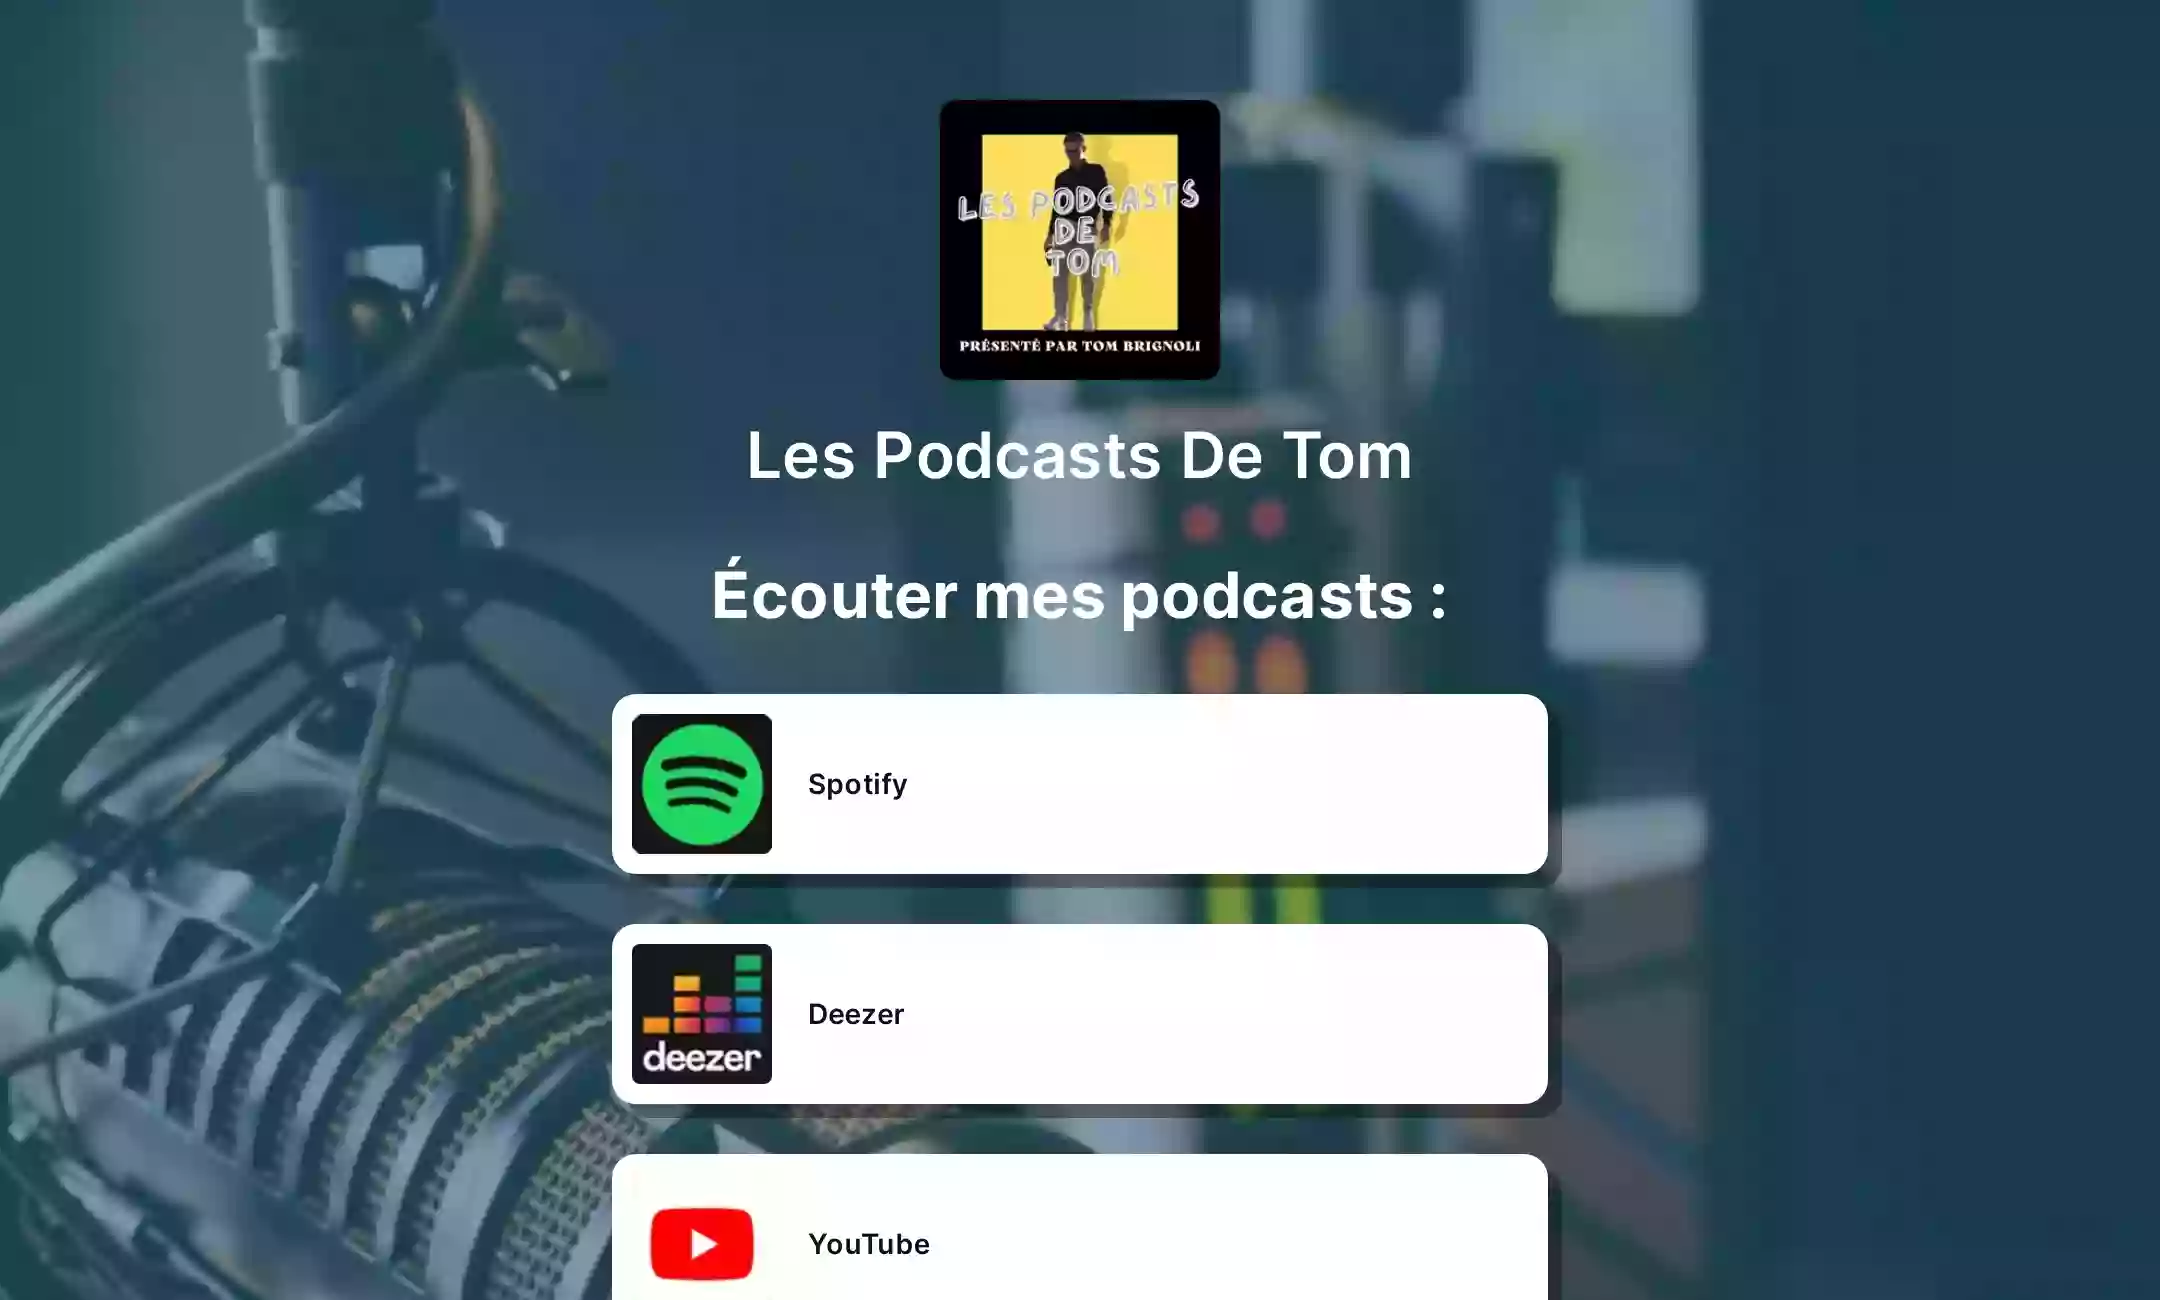 Les Podcasts de TOM